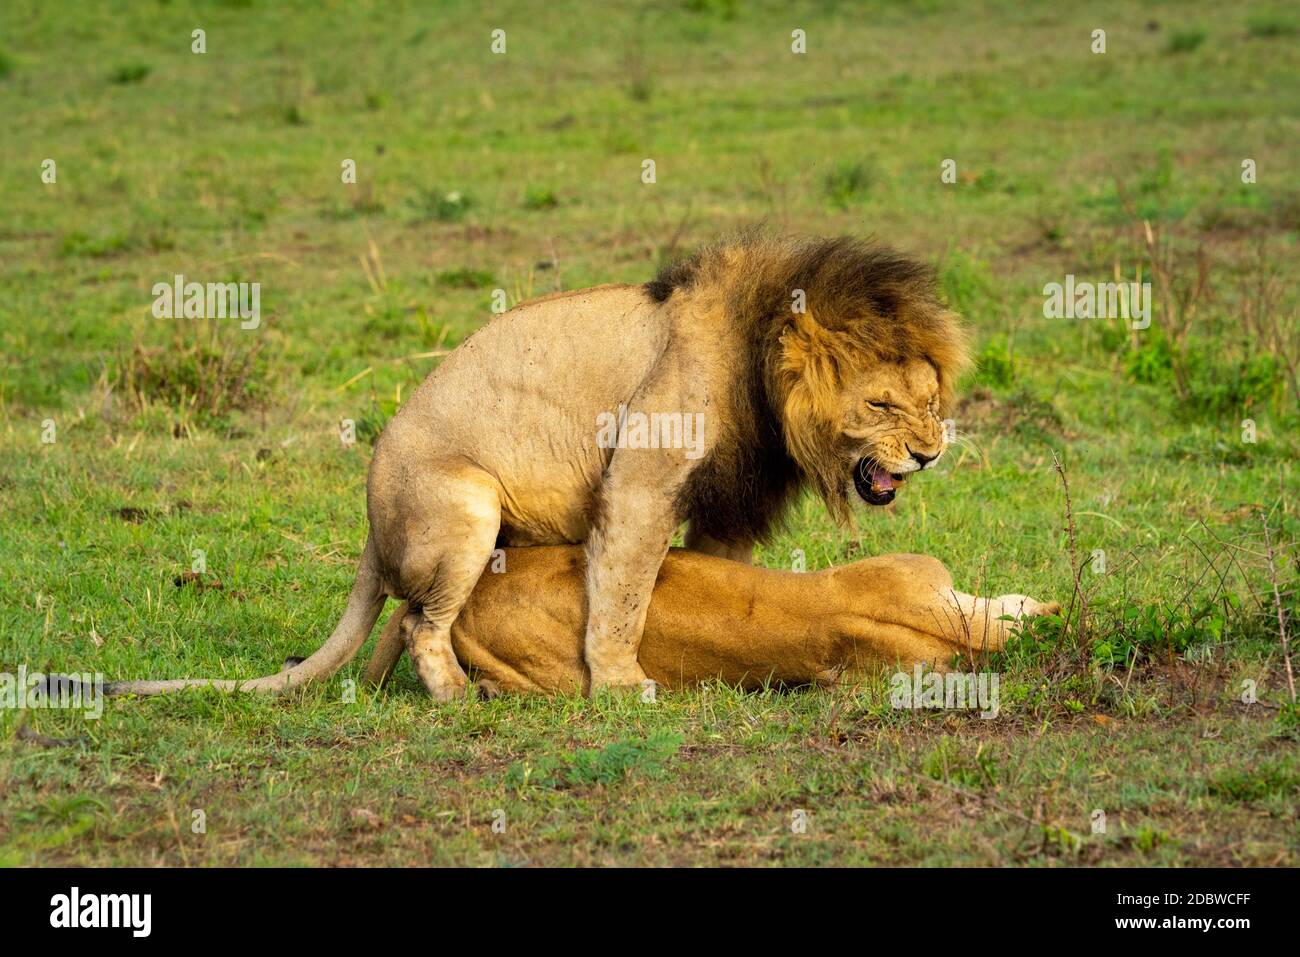 Le lion mâle grogne lorsqu'il s'accouple avec la femelle Banque D'Images